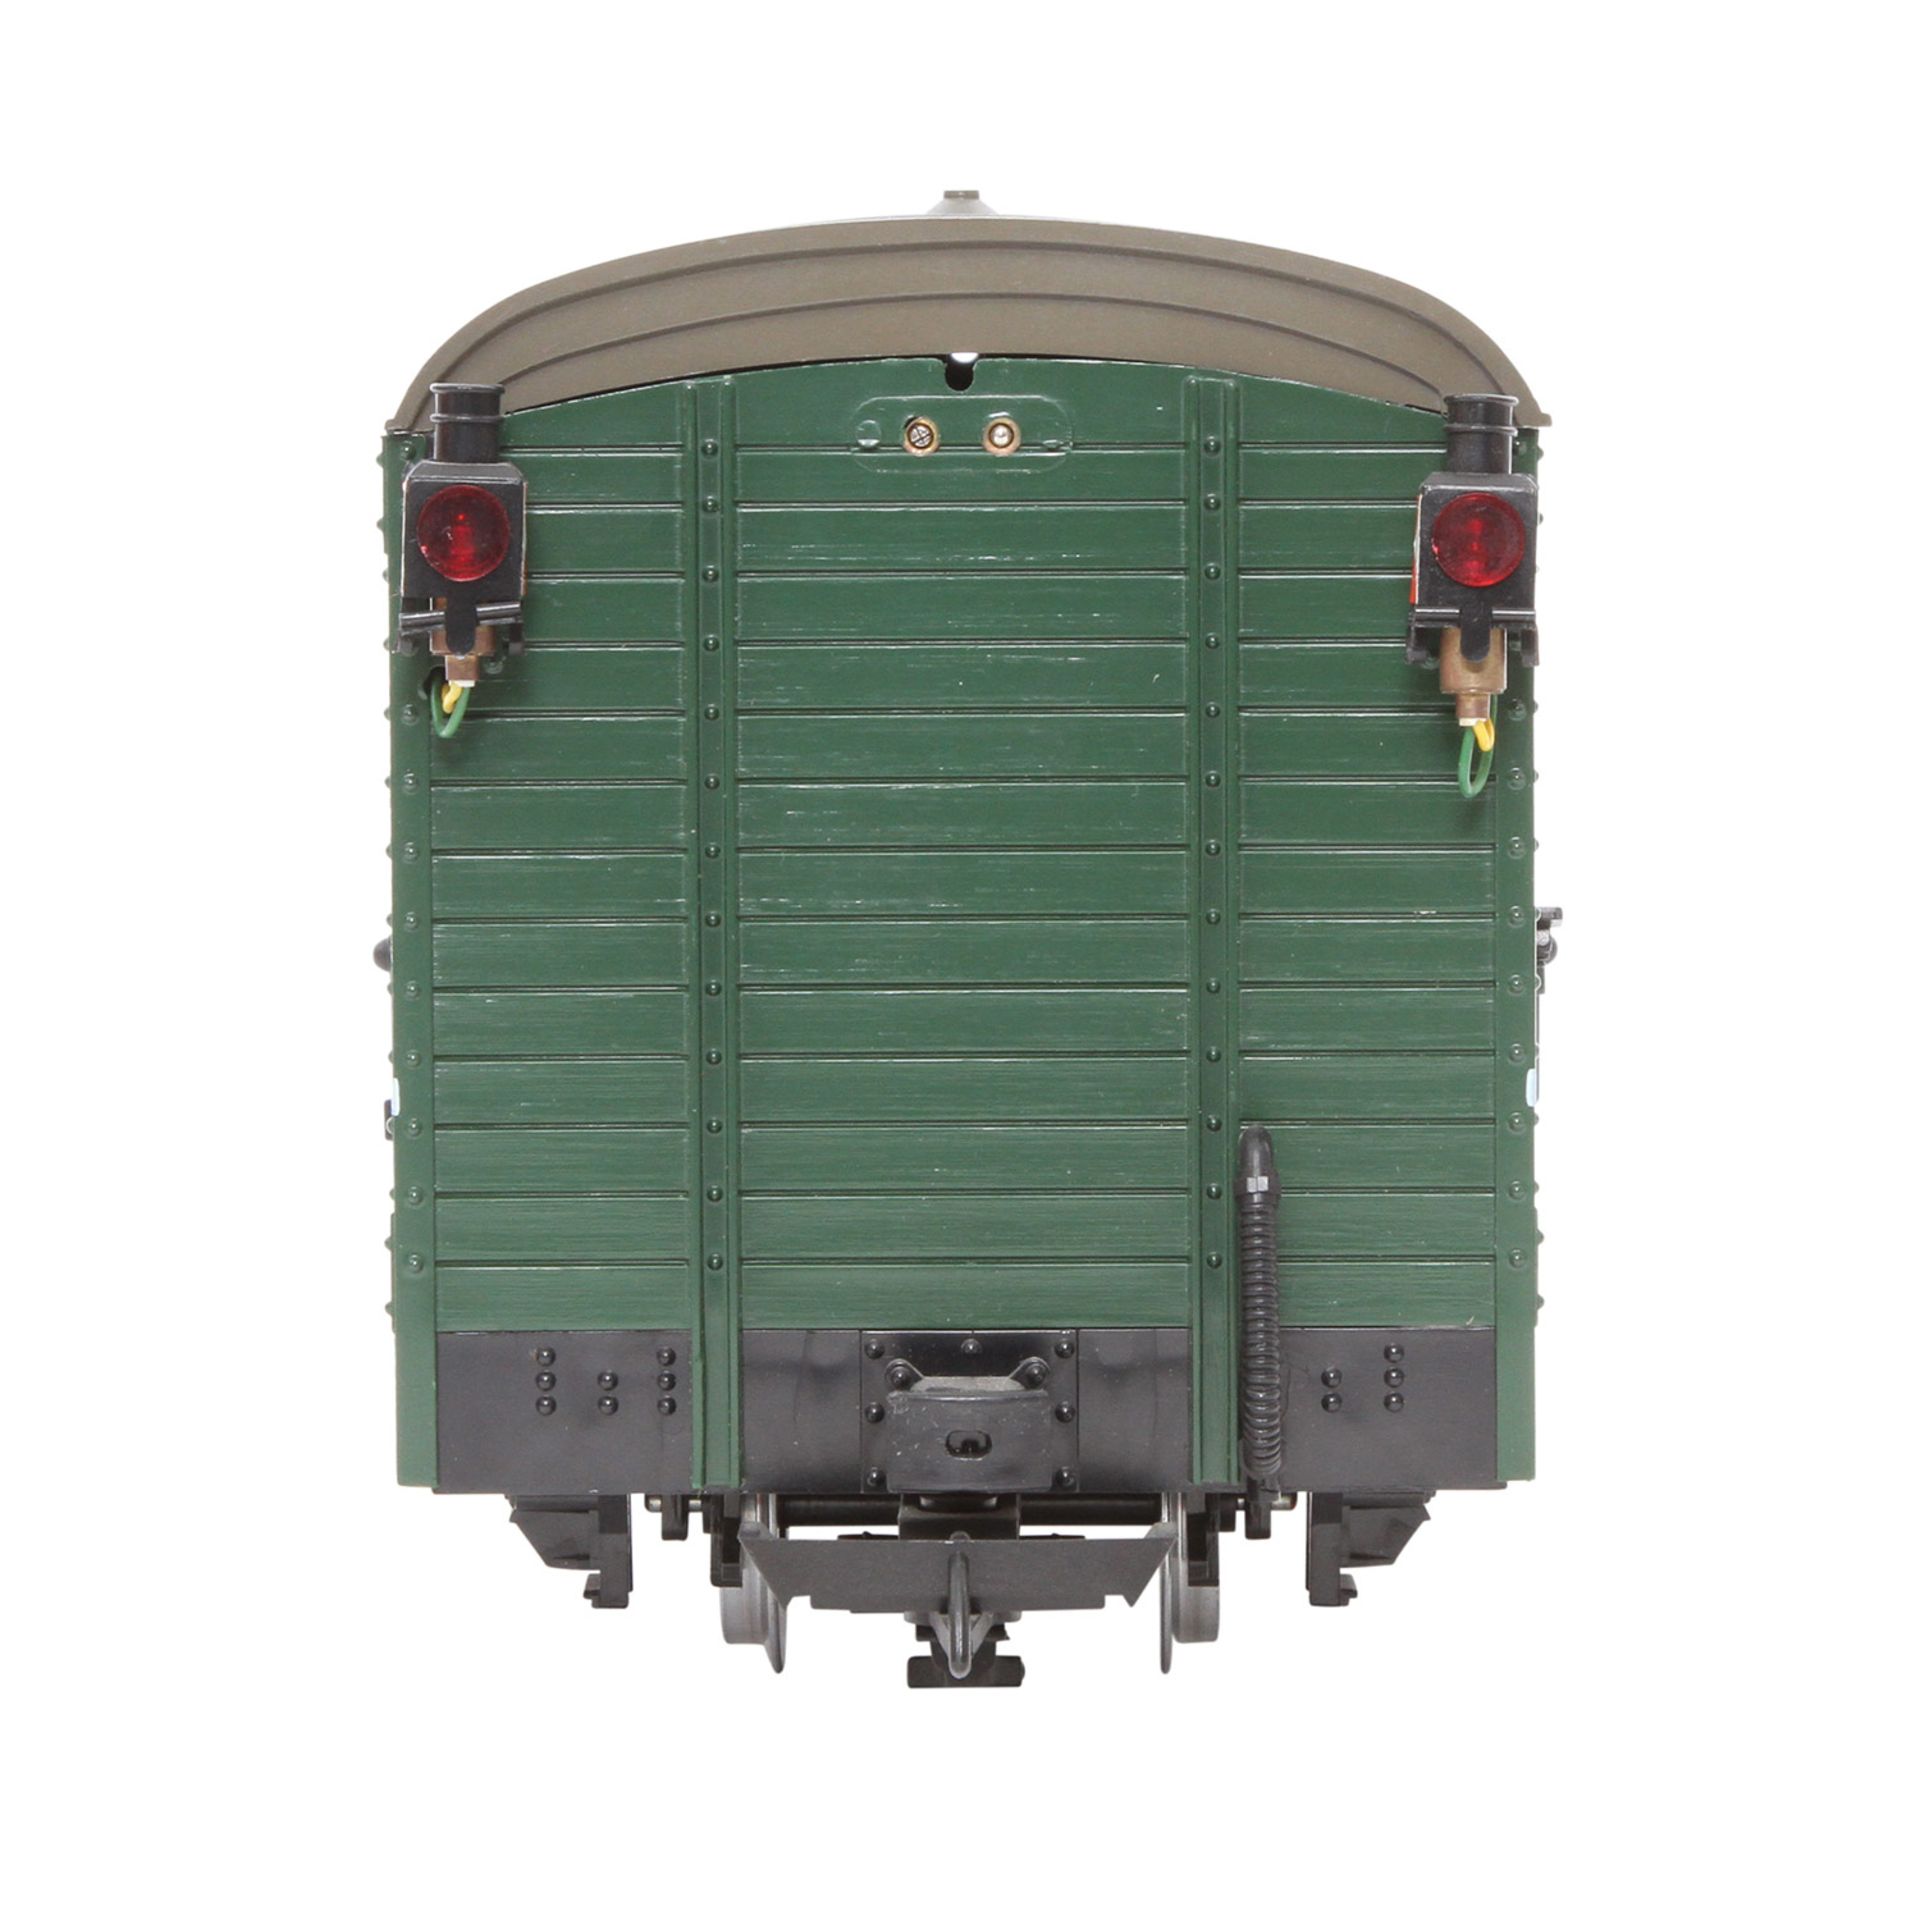 LGB Post-/Gepäckwagen 3019, Spur G, grün, 2-achsig, 2 Schlusslichter, 2 Schiebtüren zum Öffnen, - Image 4 of 8